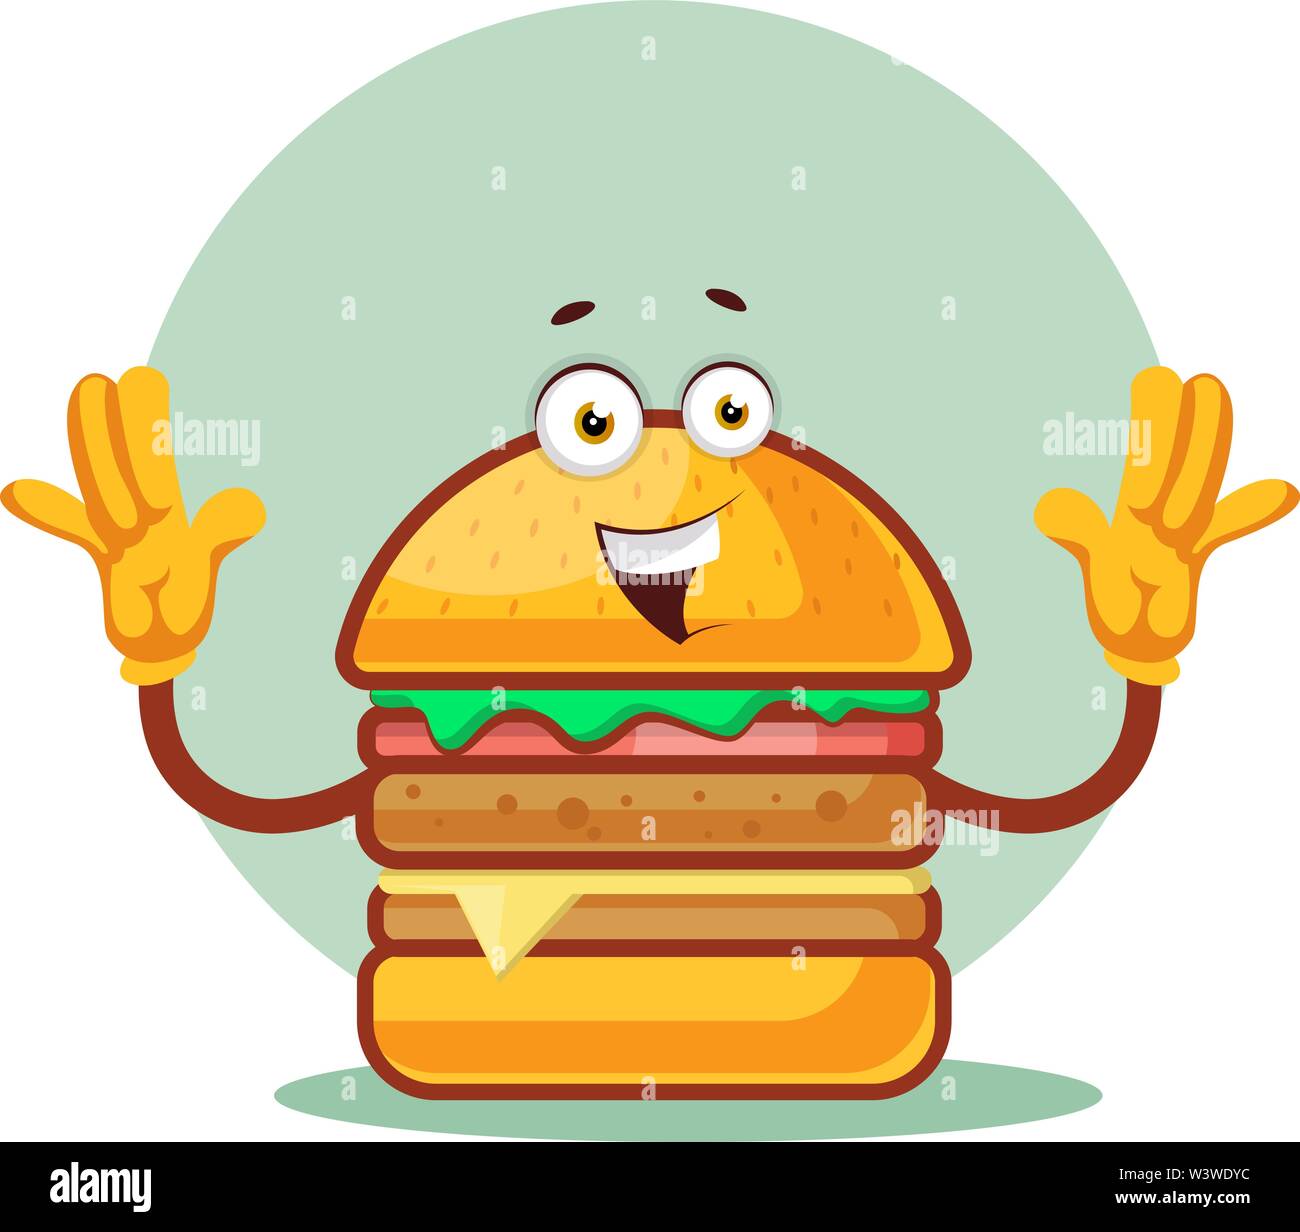 Burger hält beide Hände hoch, Illustration, Vektor auf weißem Hintergrund. Stock Vektor